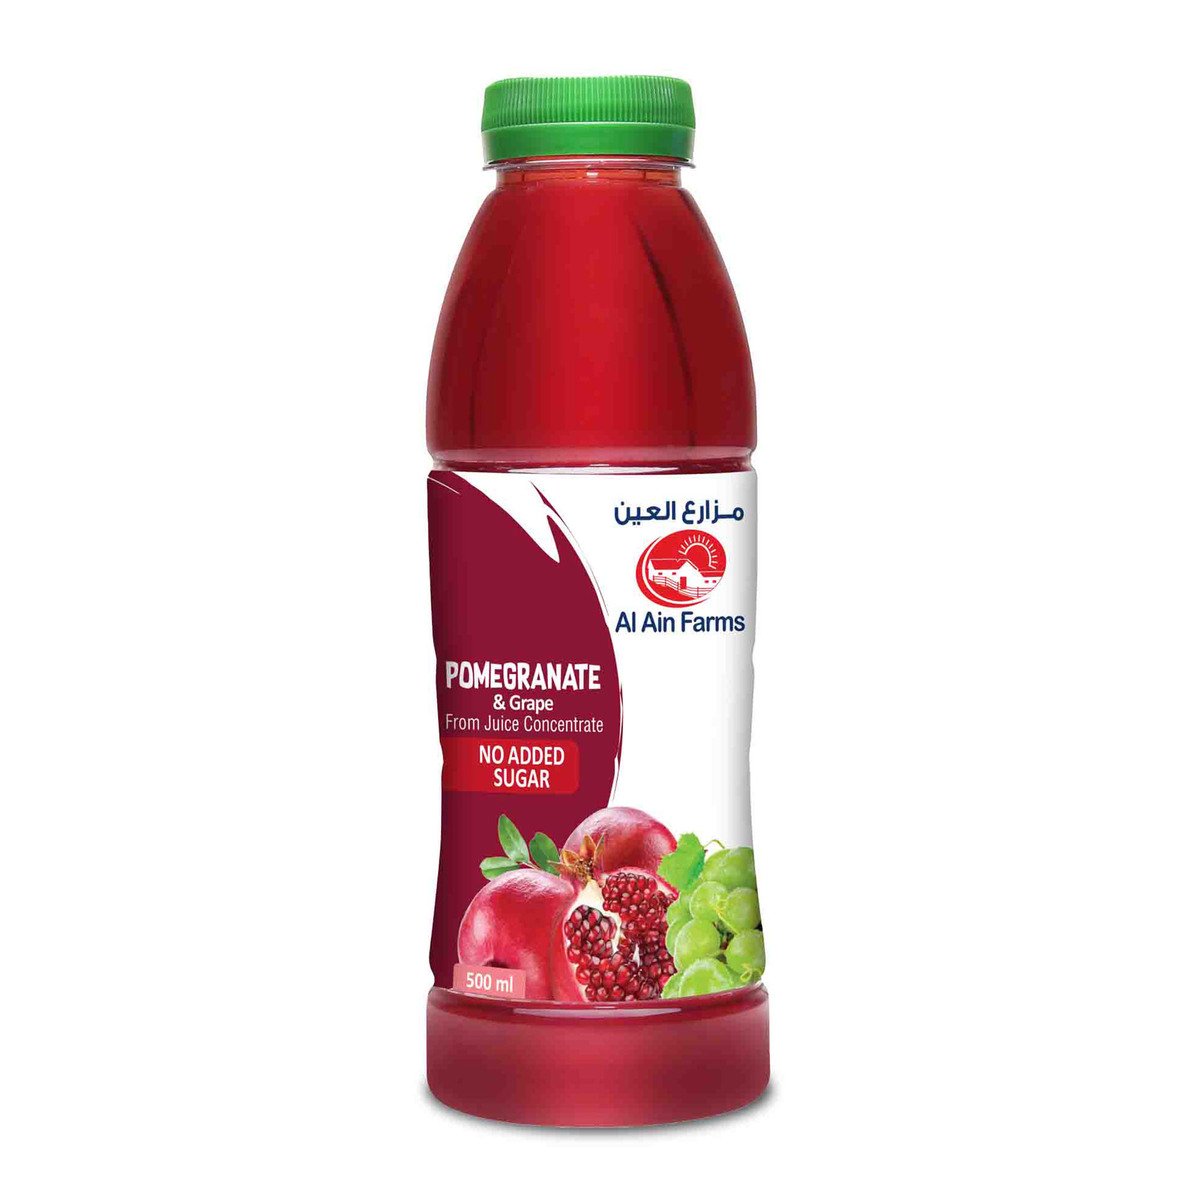 Al Ain Pomegranate & Grape 500 ml